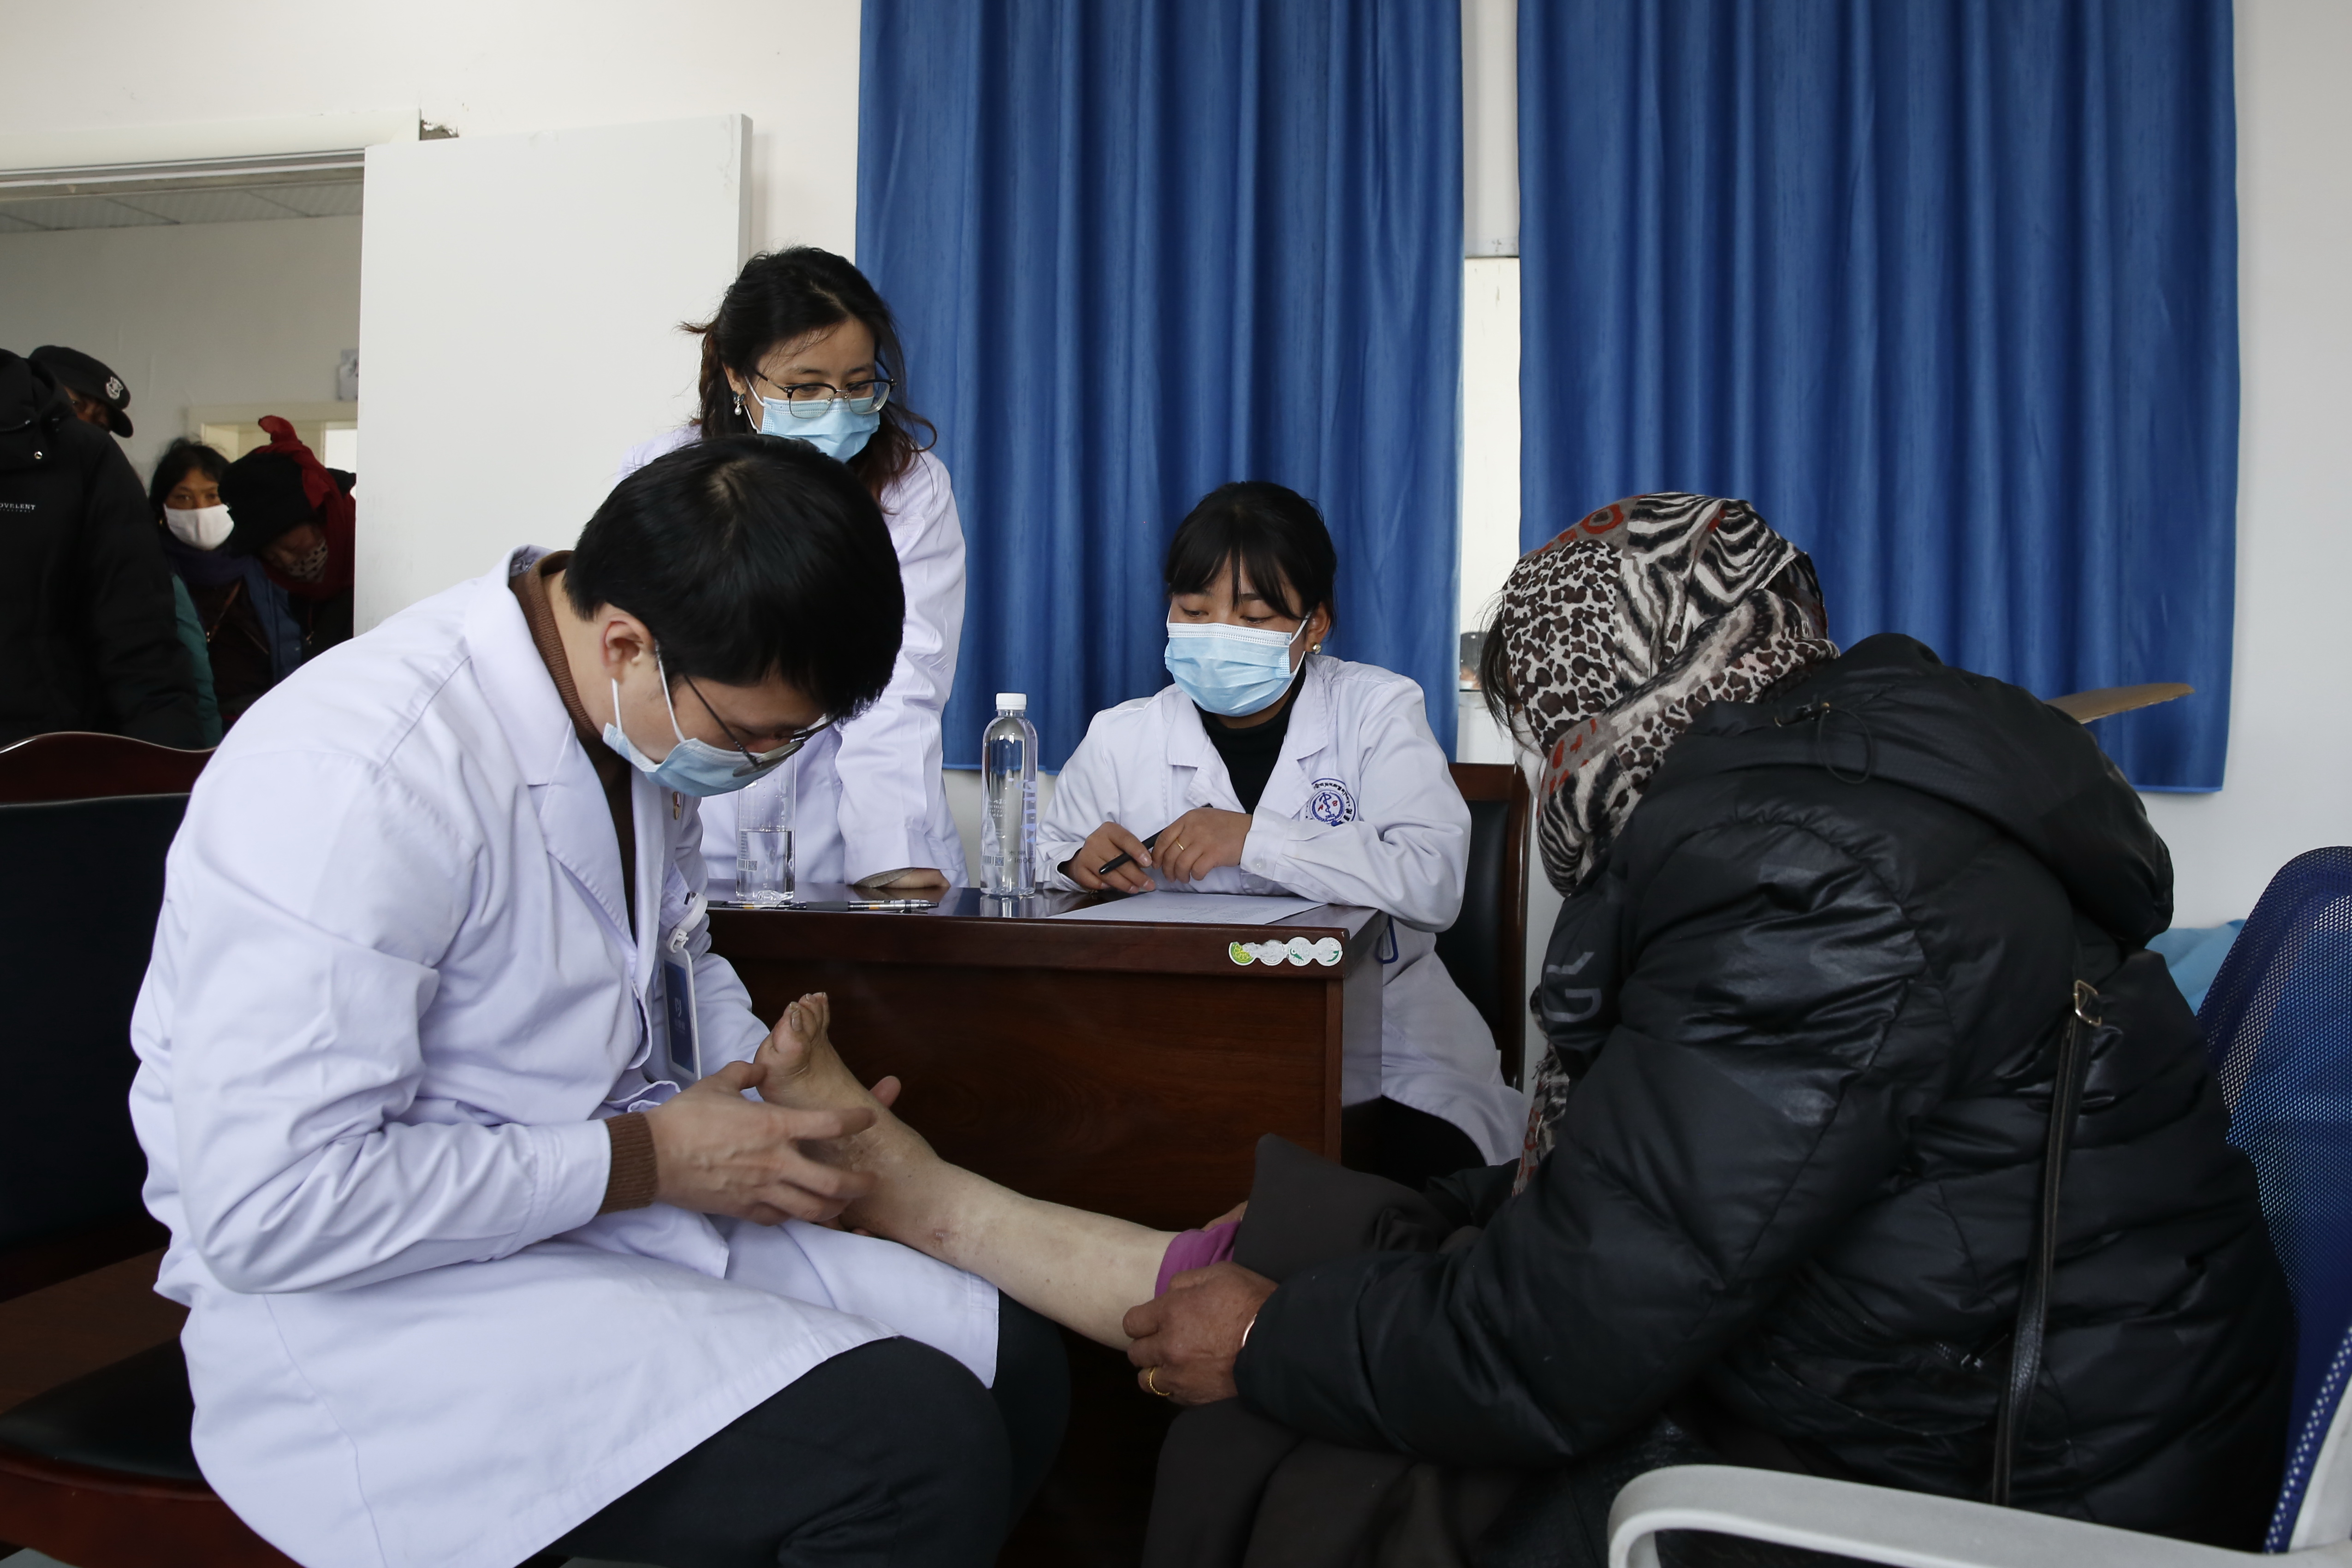 400余名患者接受义诊——大骨节病承接社会服务试点项目在四川阿坝县开展义诊工作